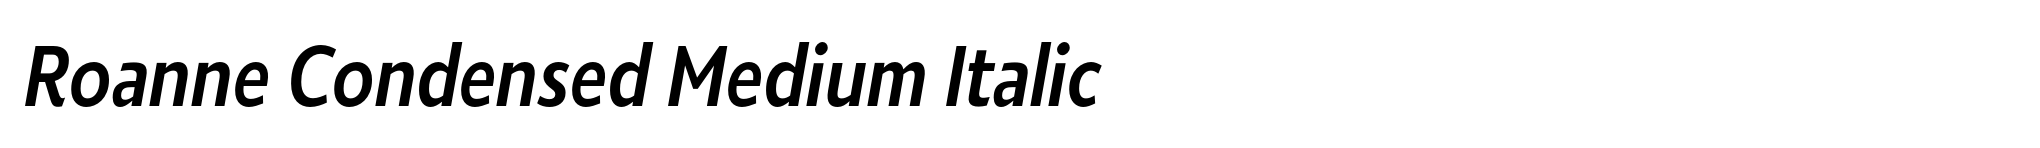 Roanne Condensed Medium Italic image